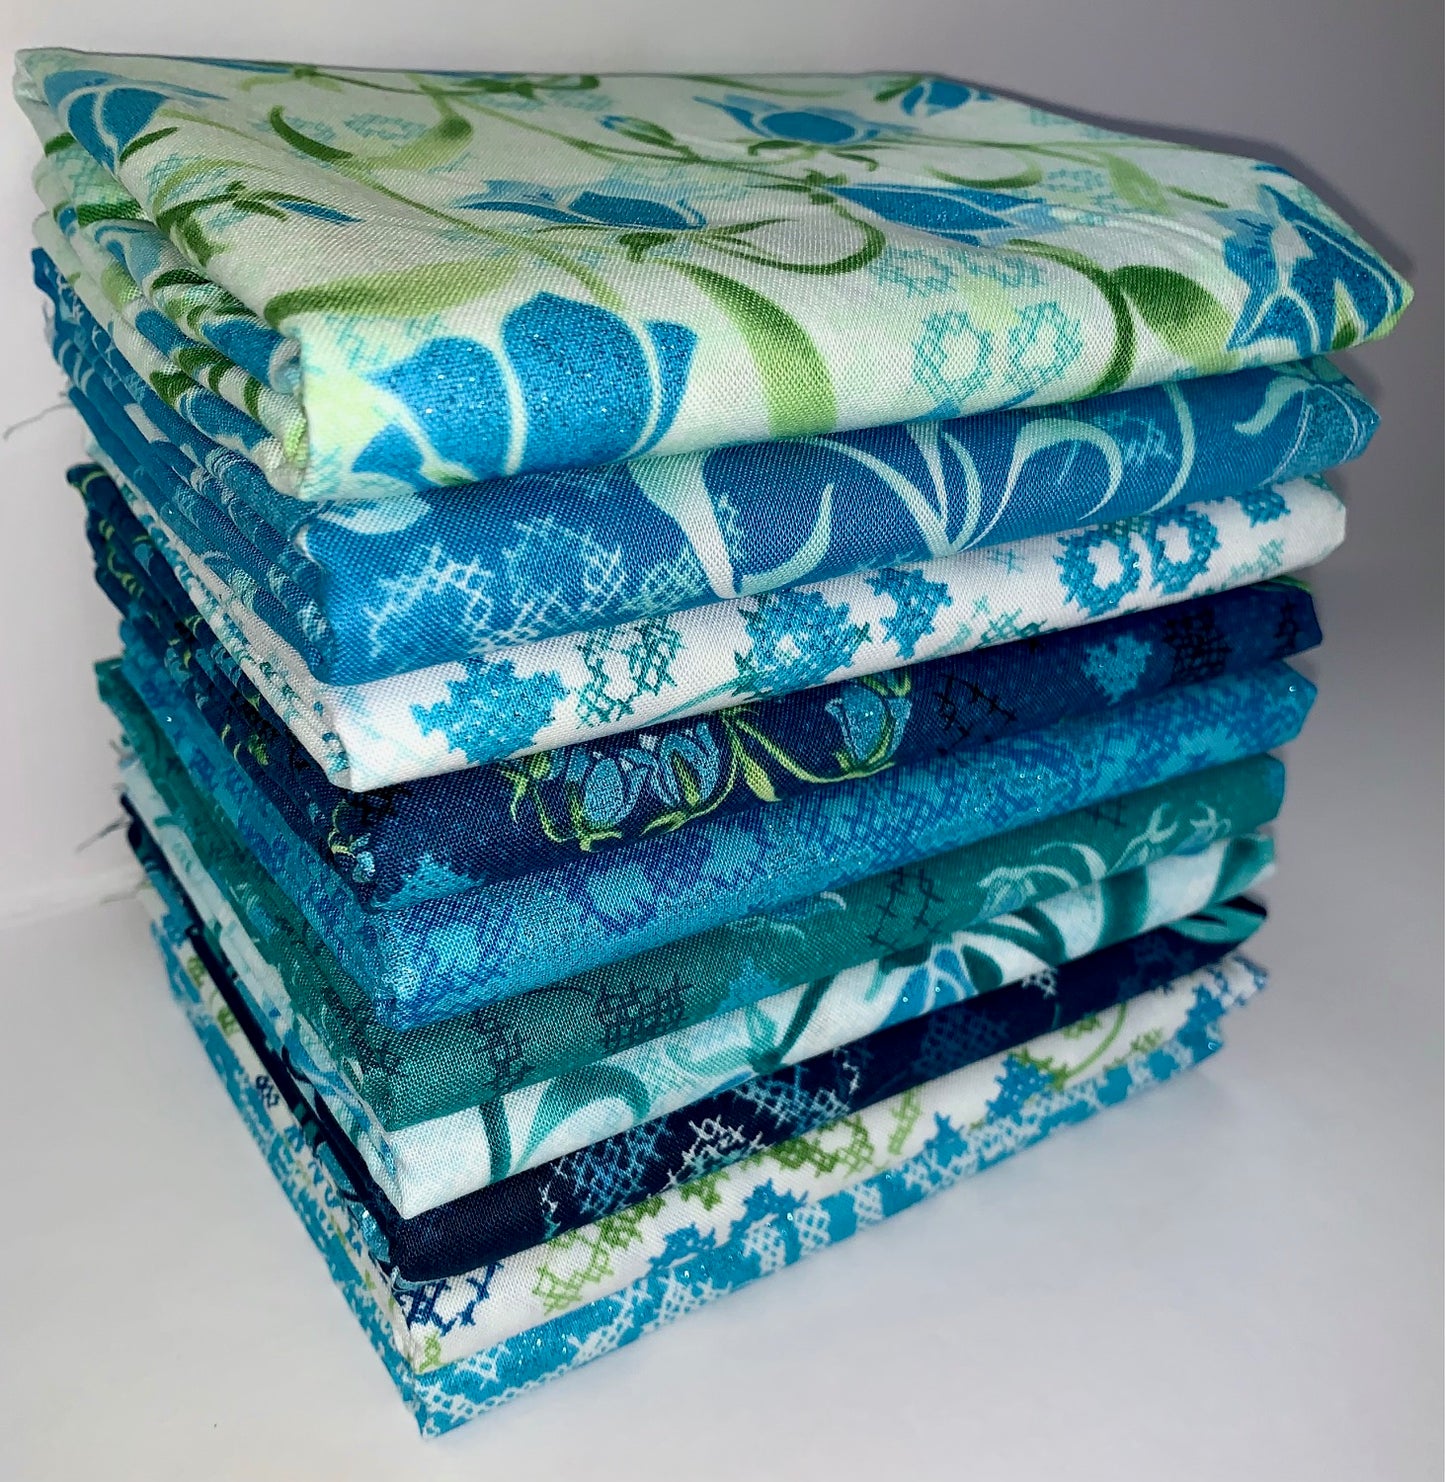 RJR "Blue Belle" Shimmer Half-yard Bundle - 10 Fabrics, 5 Total Yards